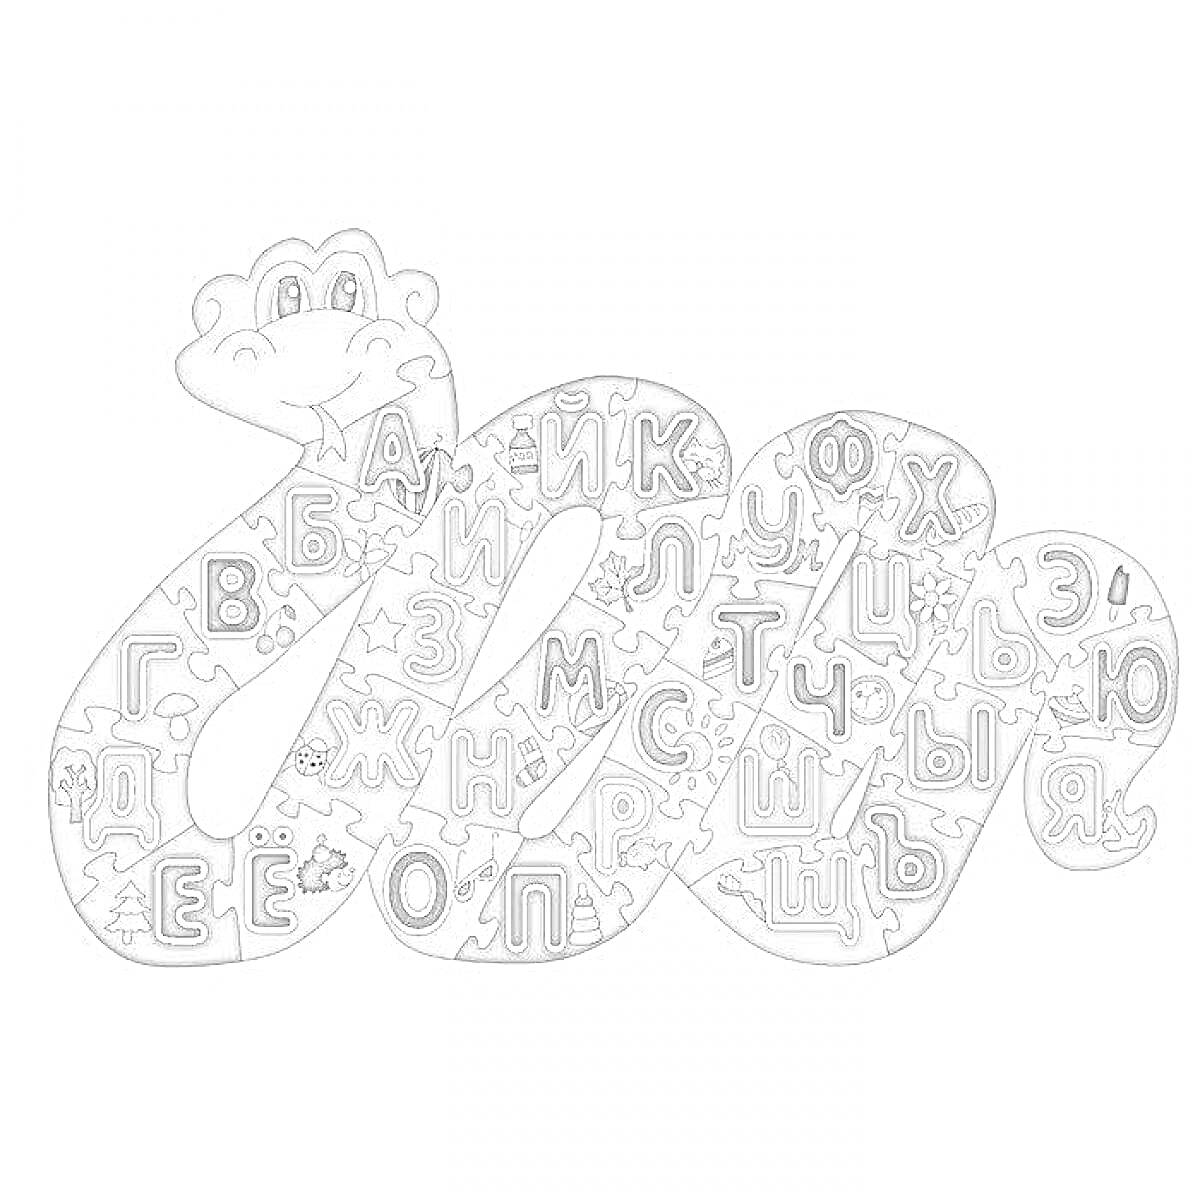 Раскраска Буквоед в виде змеи, с буквами русского алфавита на теле от А до Я